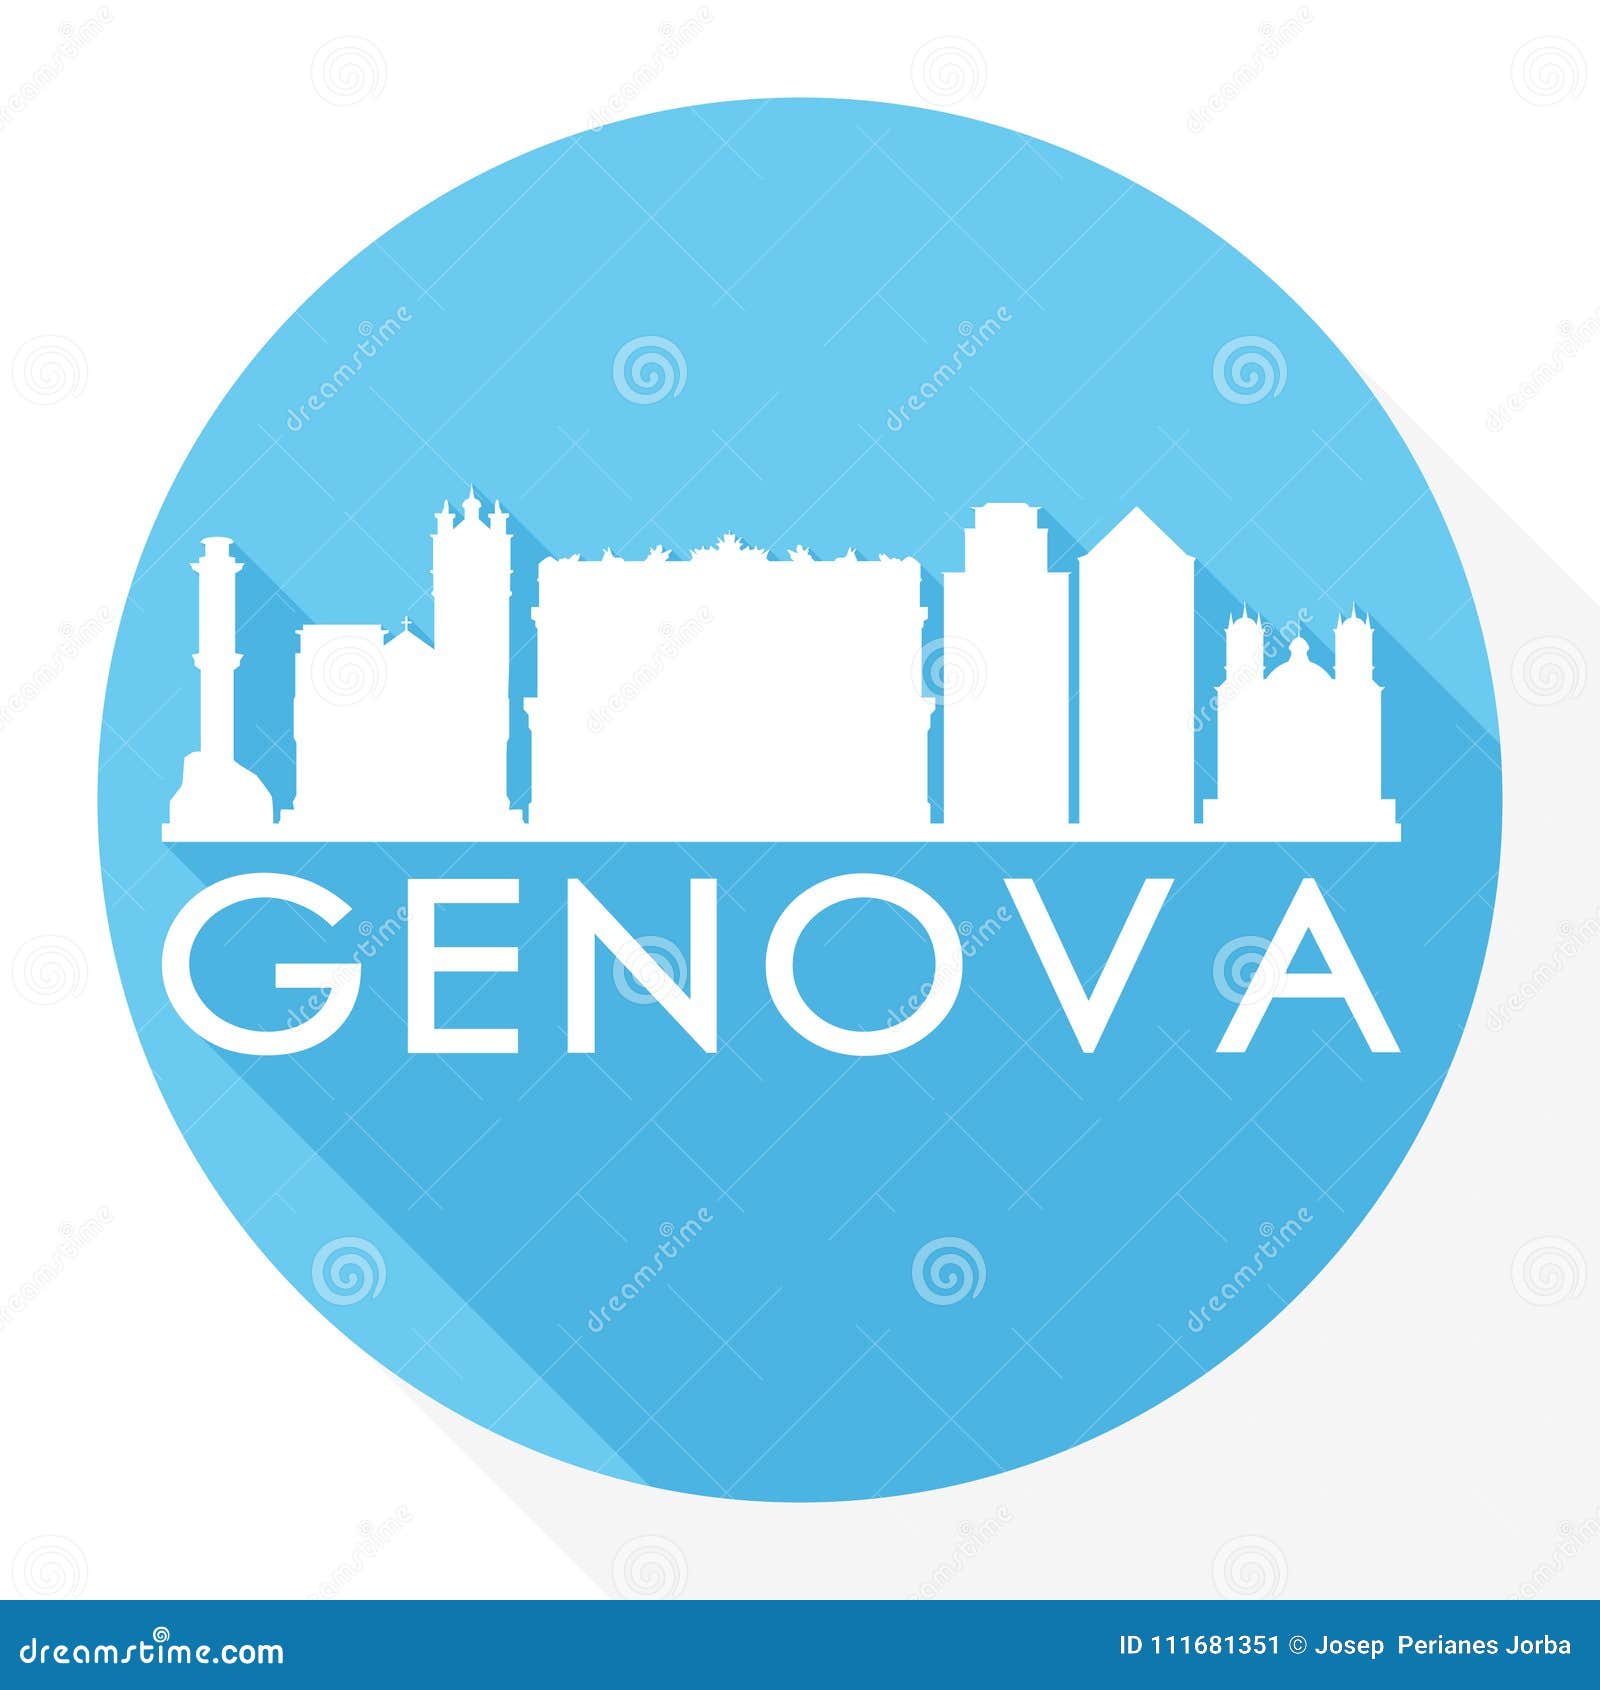 Genoa Logo PNG Vectors Free Download